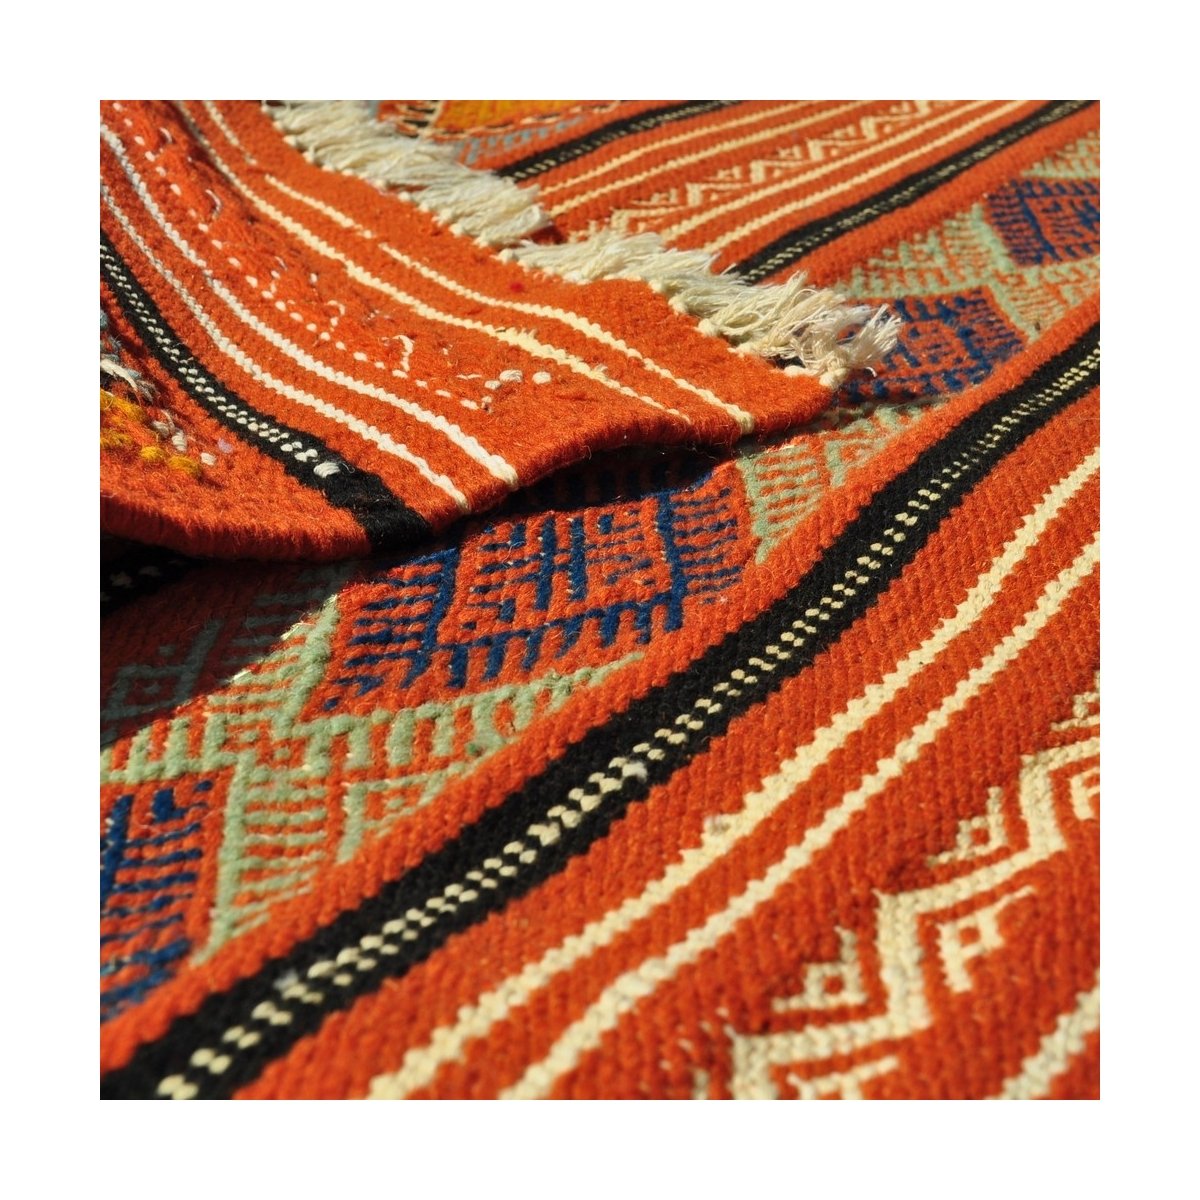 Tapete berbere Tapete Kilim Sayada 67x100 Multicor (Tecidos à mão, Lã, Tunísia) Tapete tunisiano kilim, estilo marroquino. Tapet